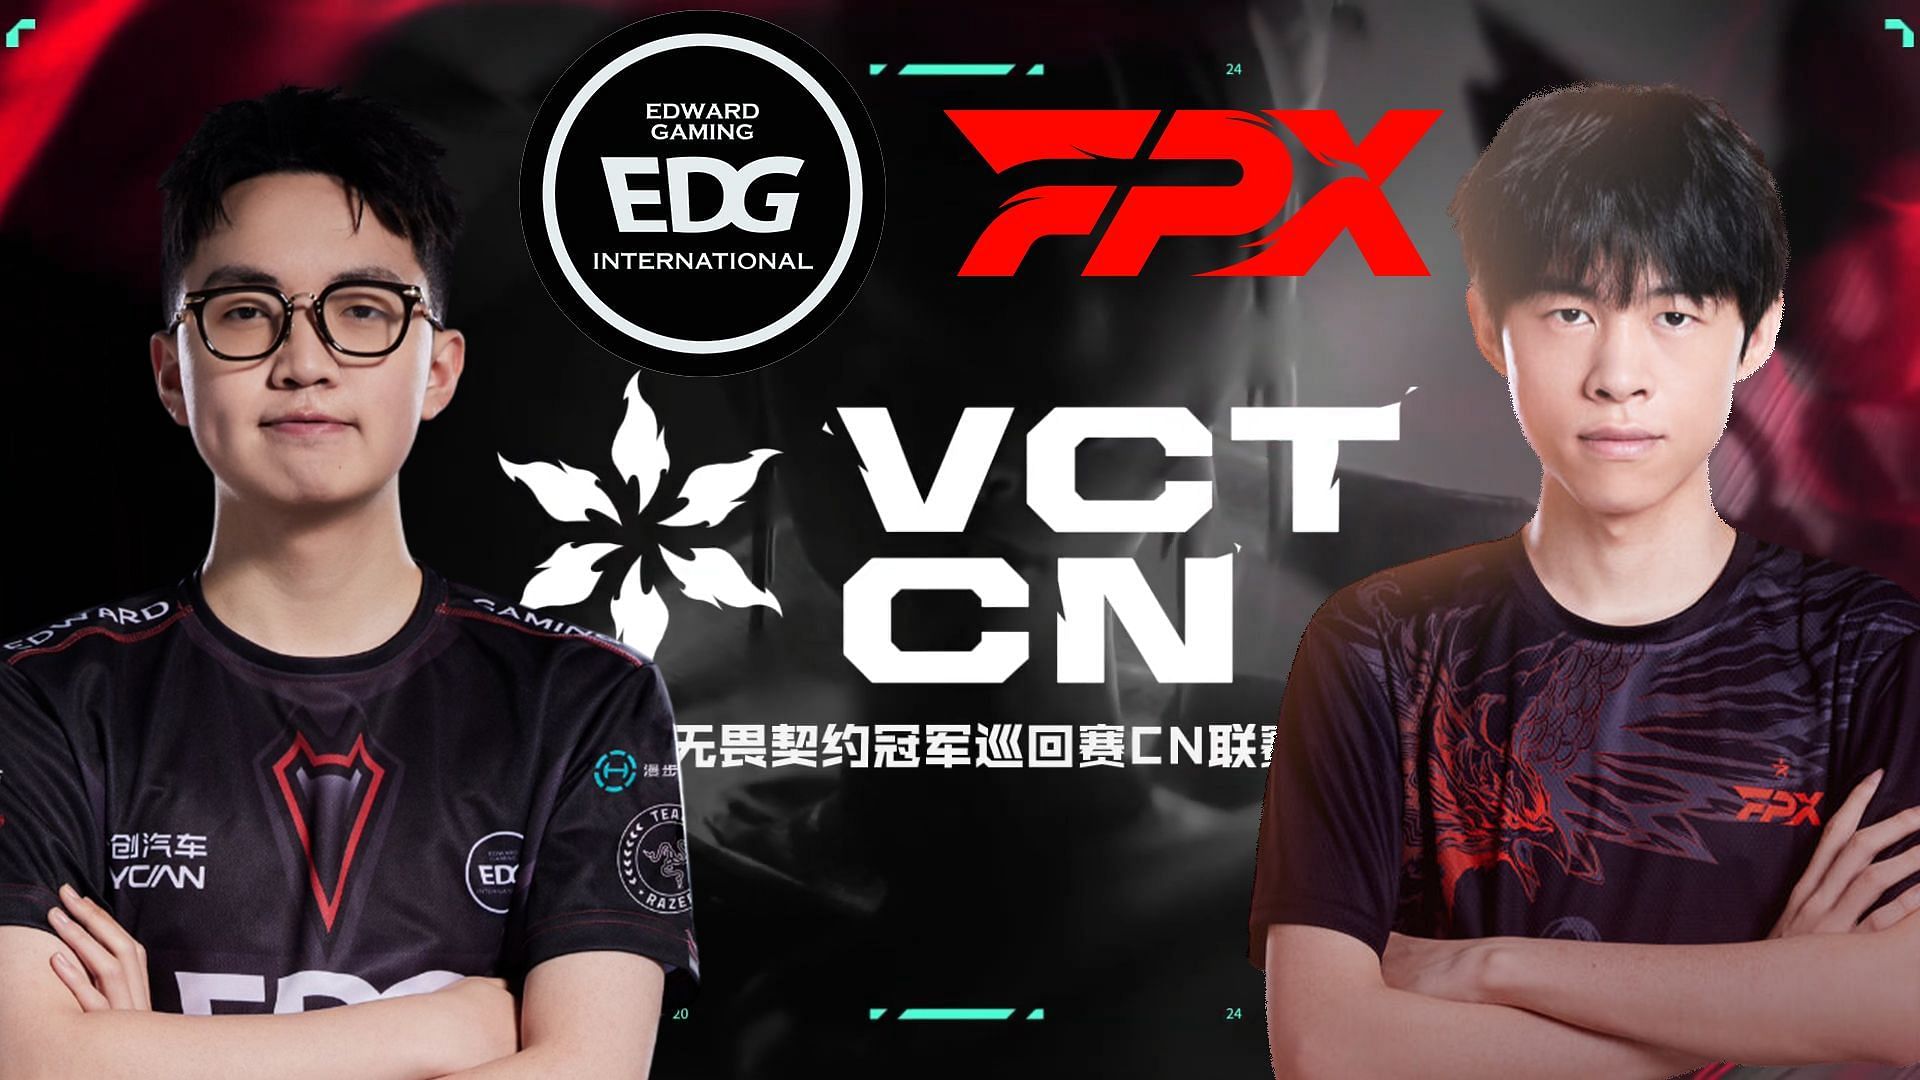 EDward Gaming vs FunPlus Phoenix at VCT China Kickoff (Image via Riot Games, EDward Gaming and FunPlus Phoenix)